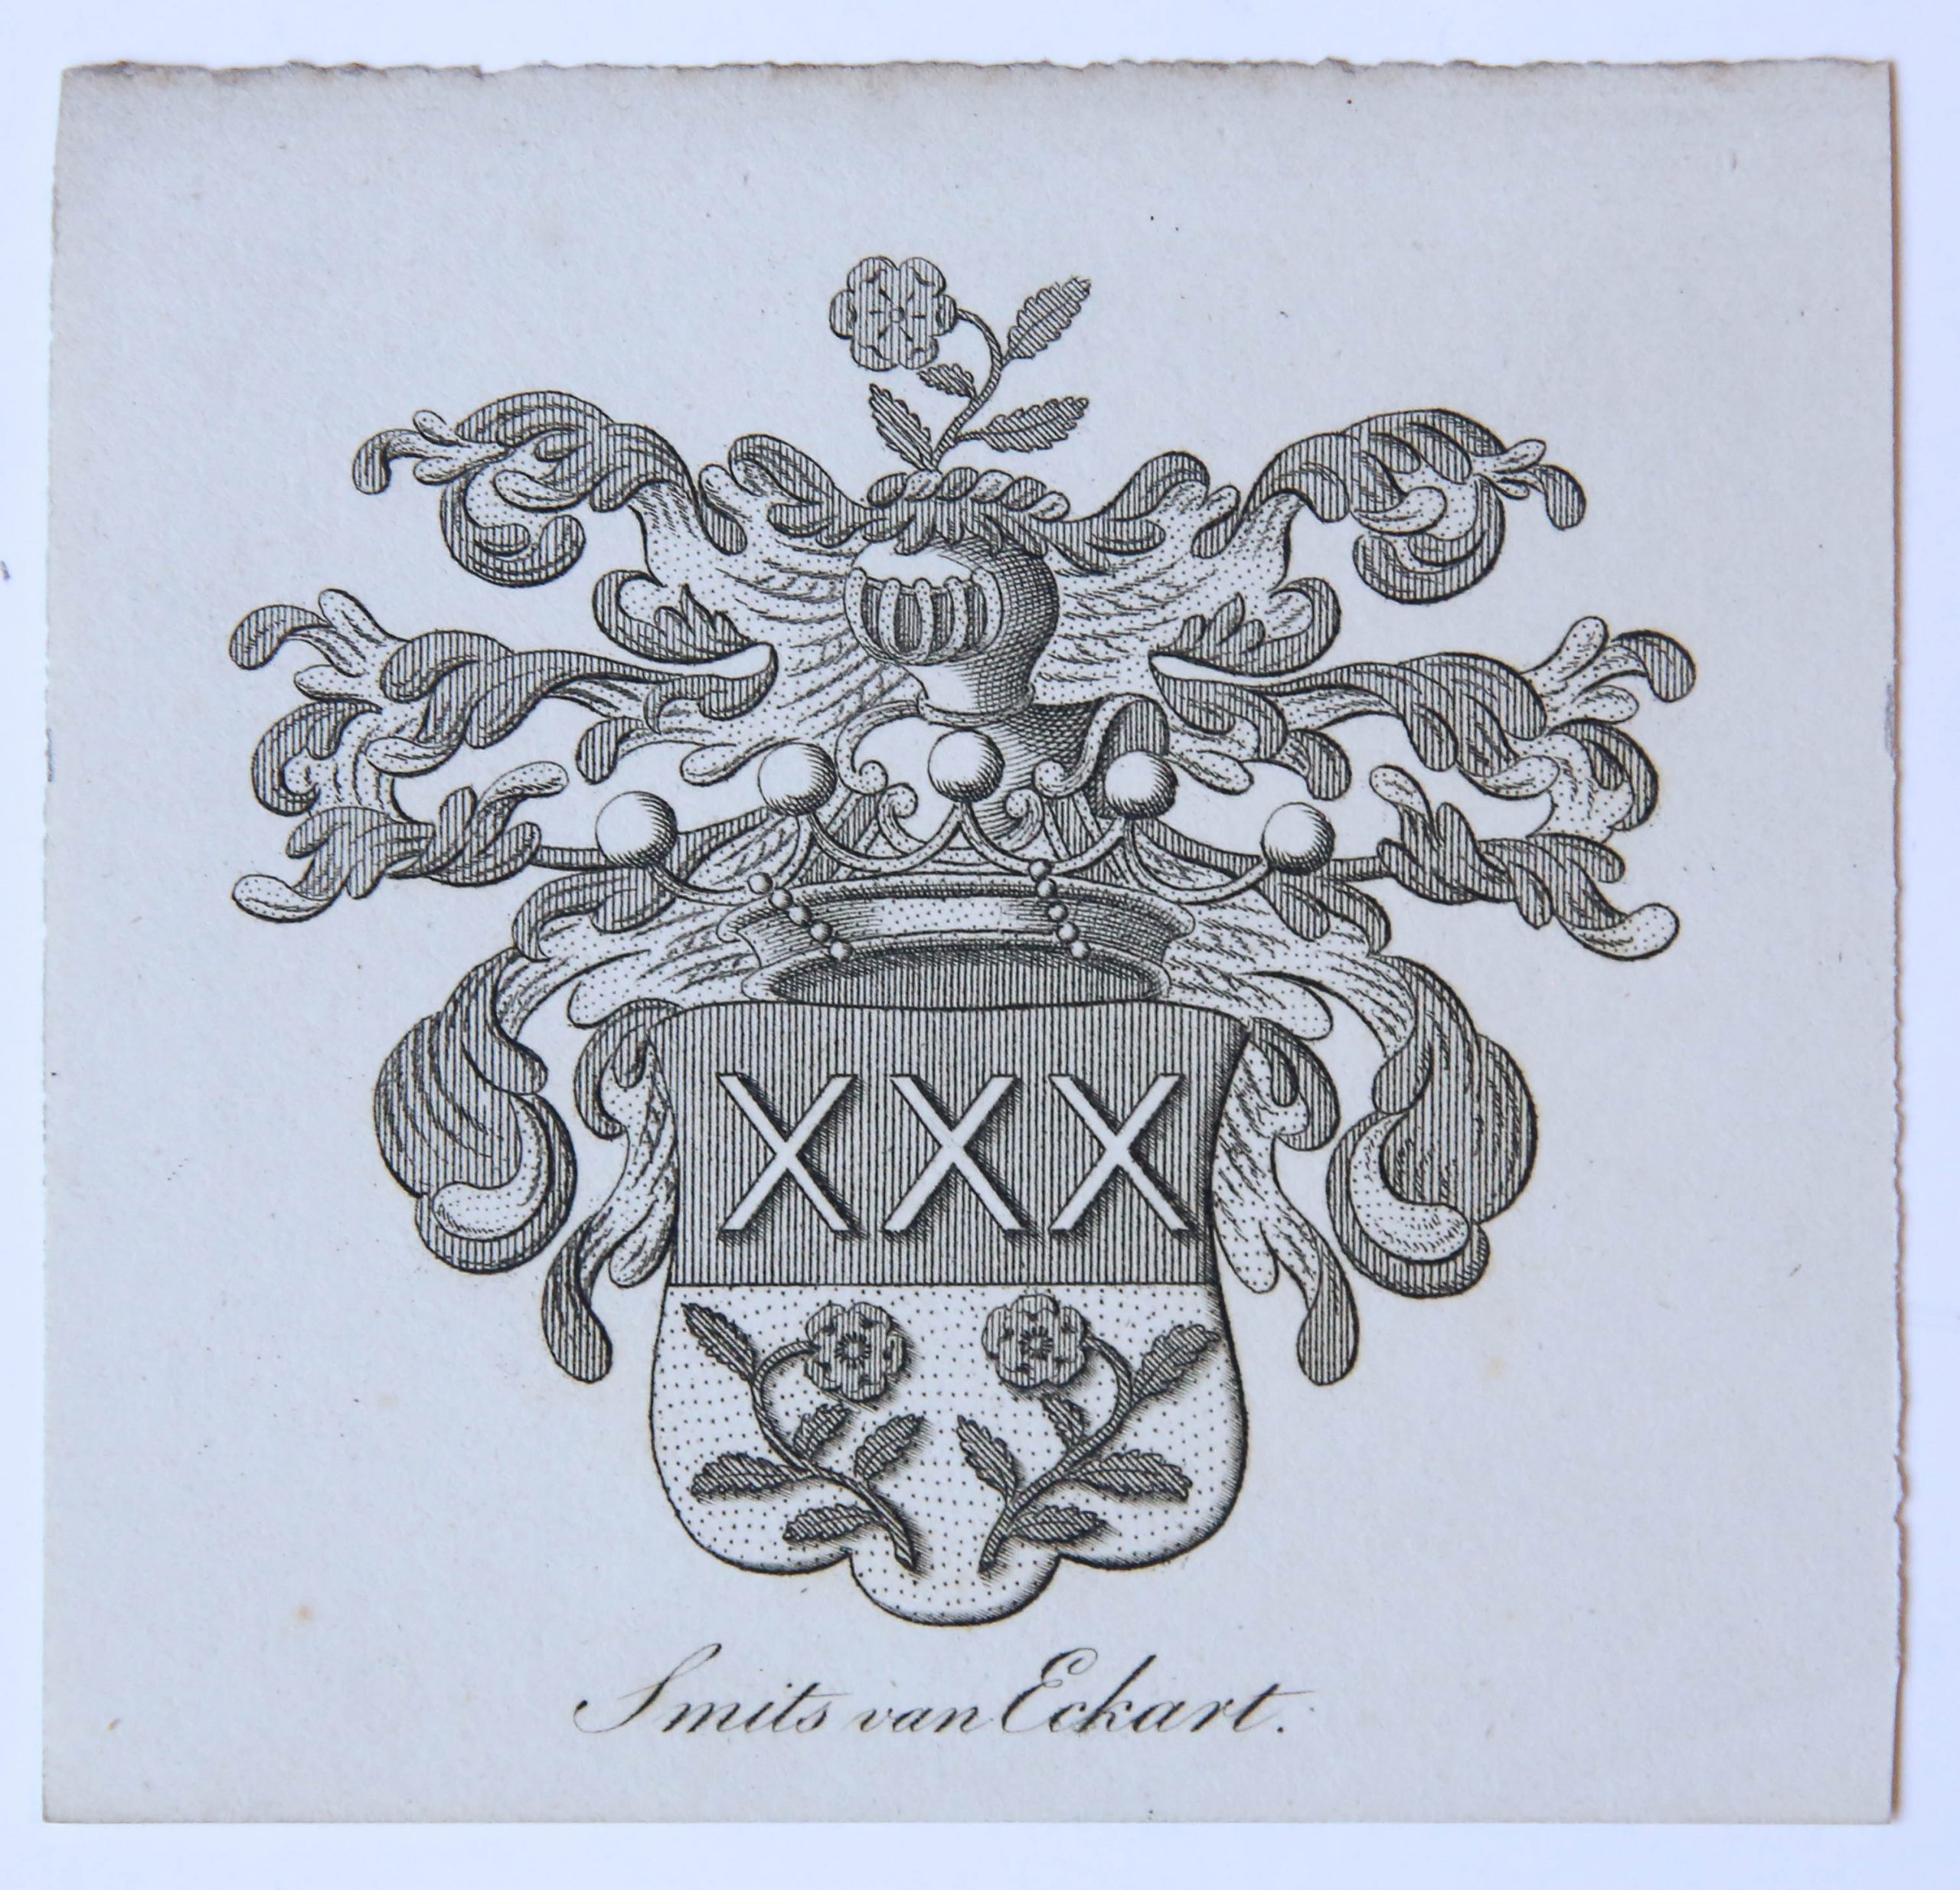 [Smits van Eckart] - Wapenkaart/Coat of Arms: Smits van Eckart.